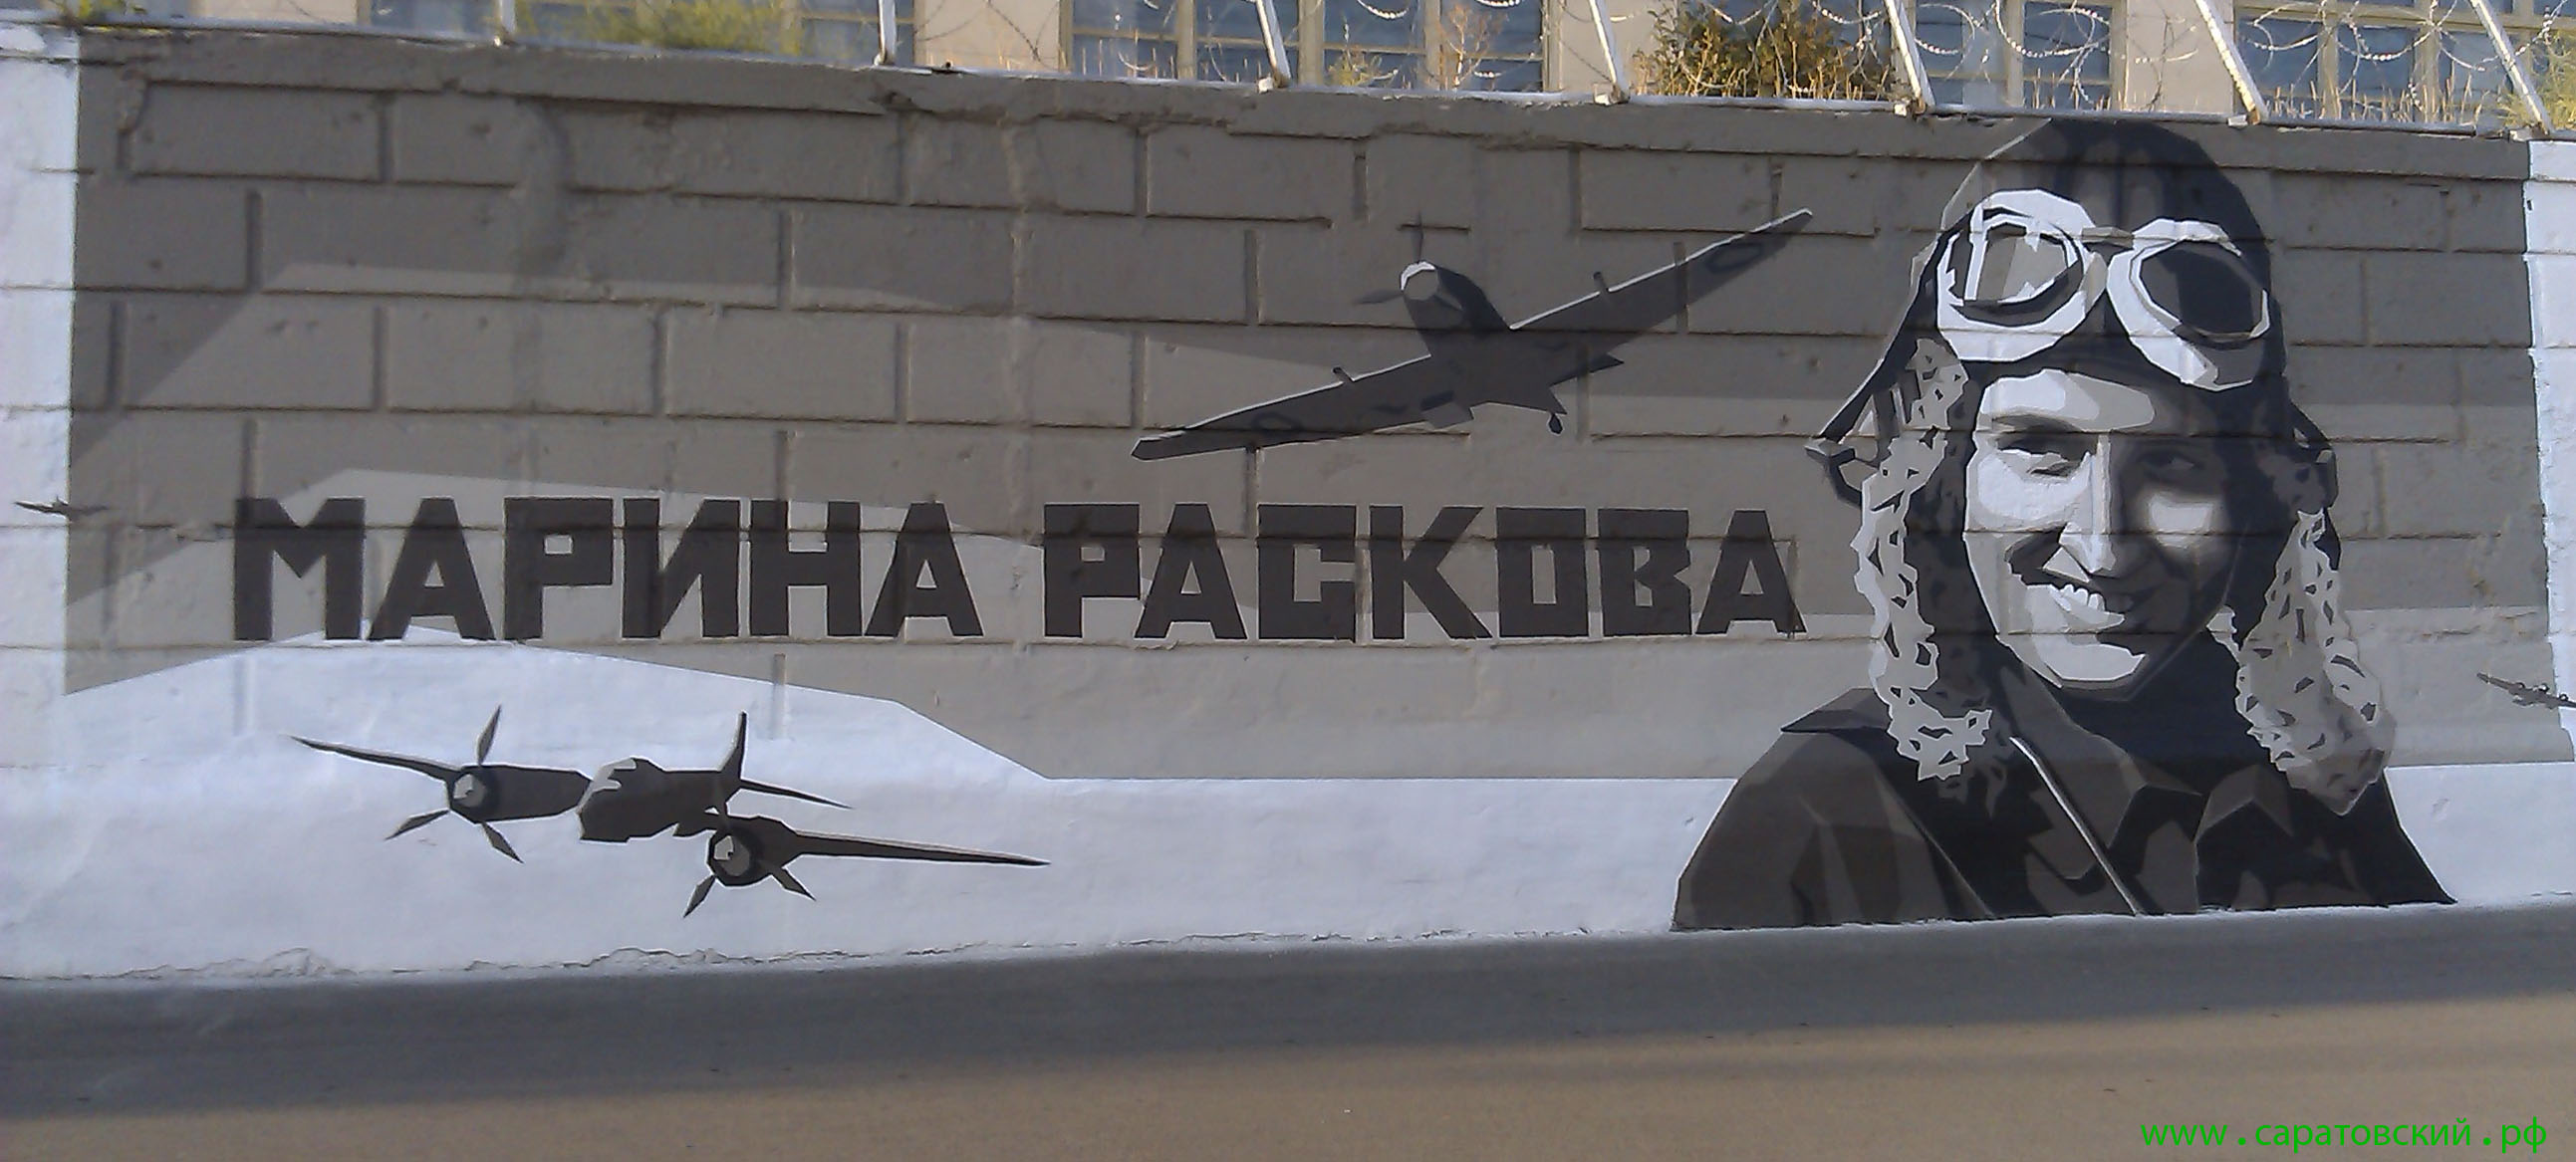 Саратовская набережная, граффити: Марина Раскова и Саратов